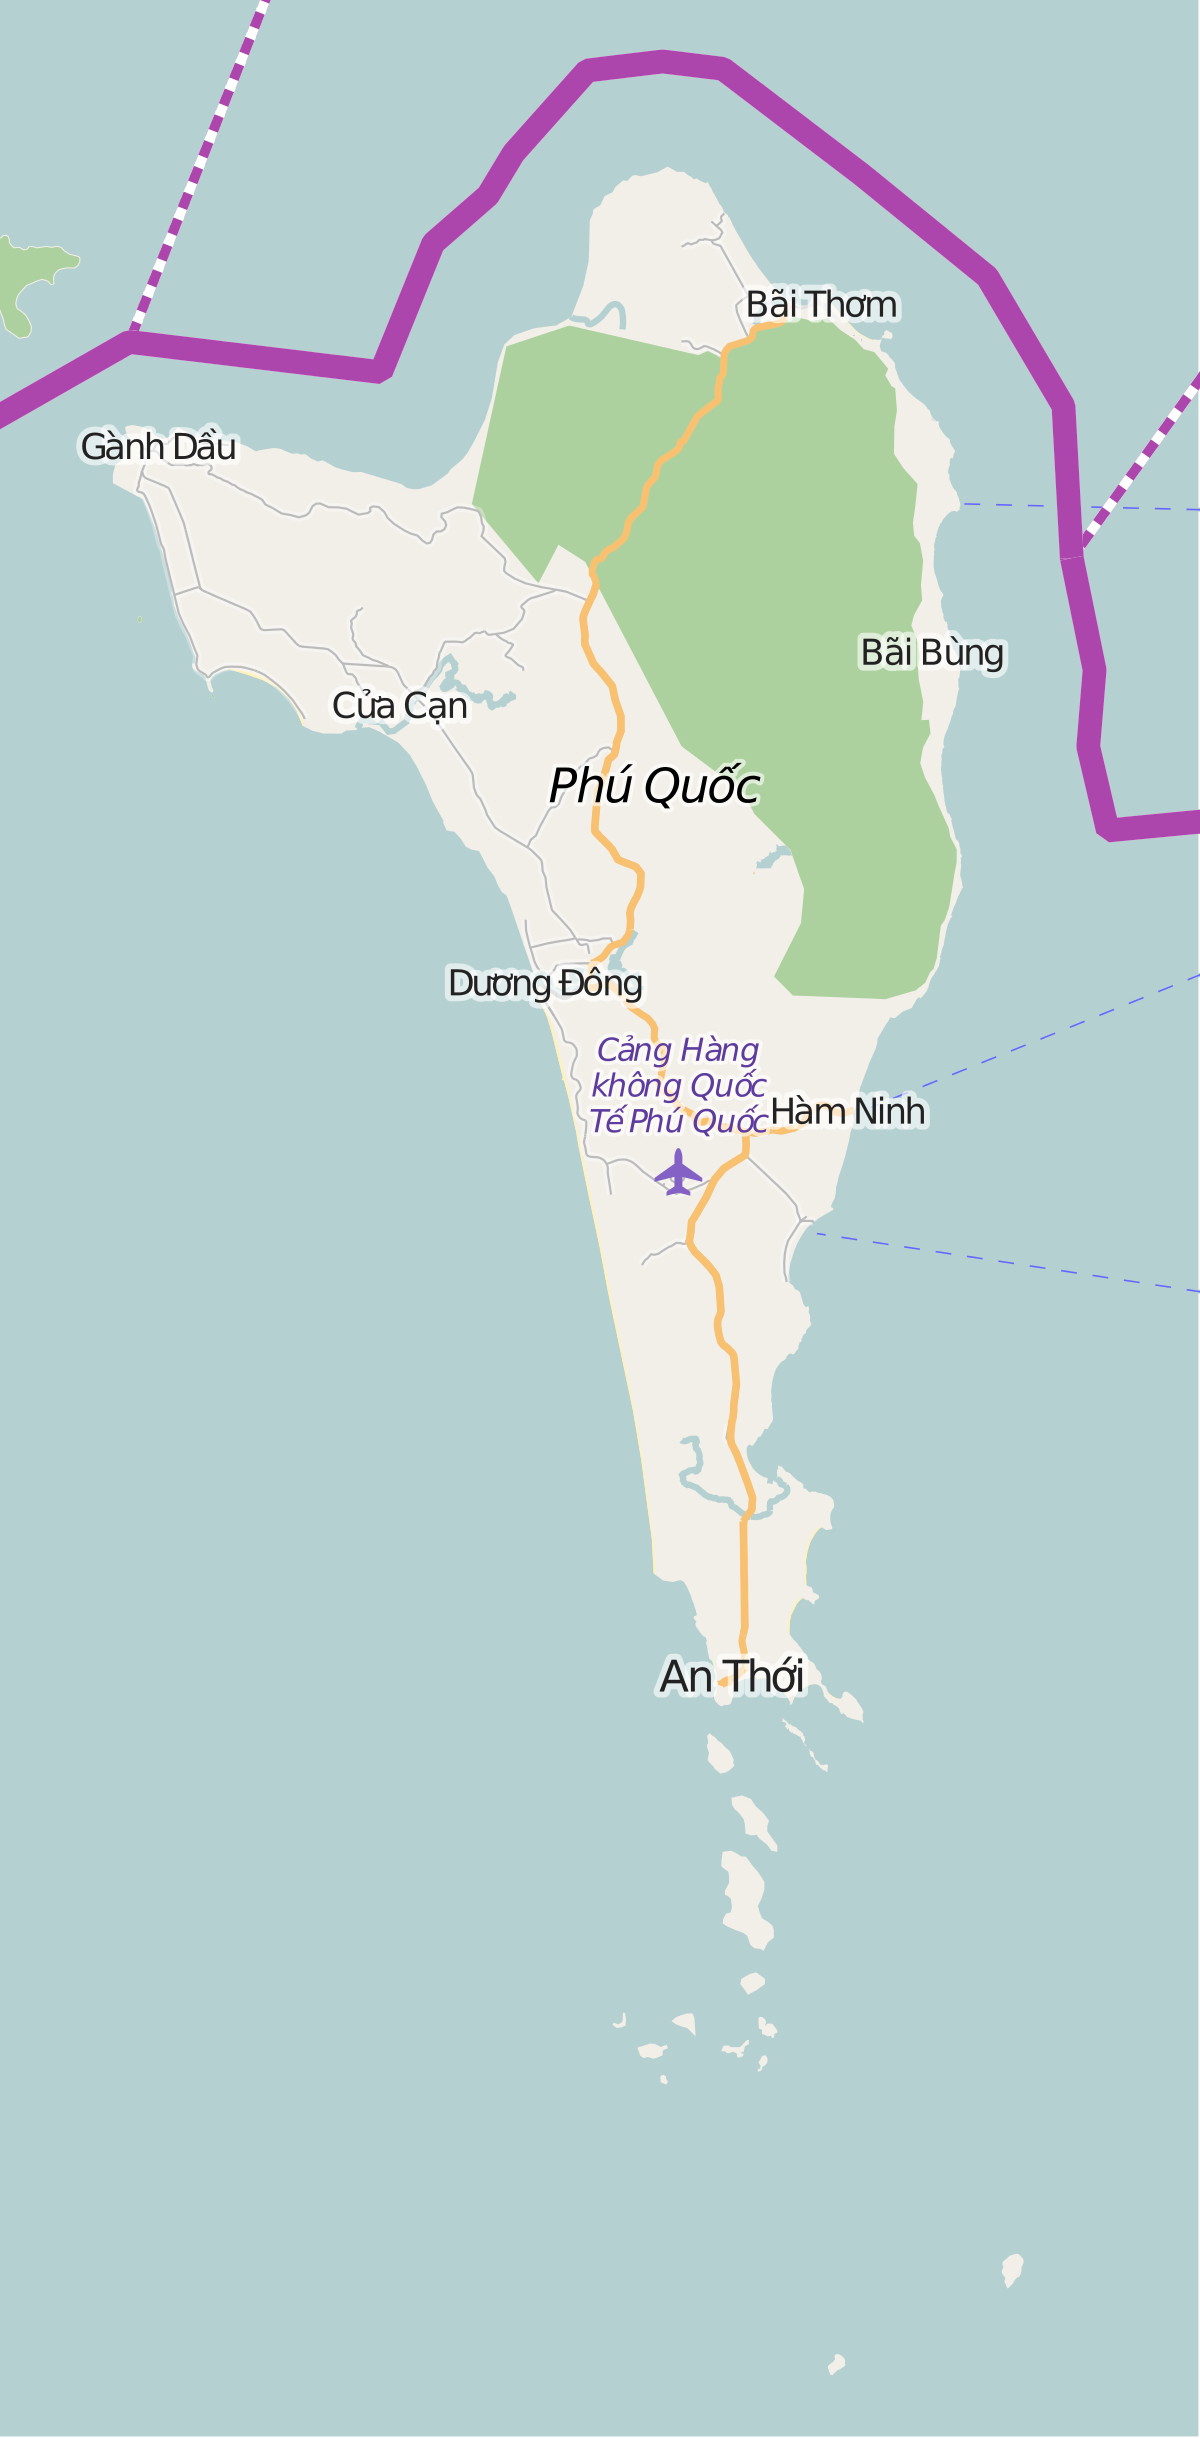 Cáp treo Hòn Thơm sẽ là trải nghiệm không thể bỏ qua ở Kiên Giang, Việt Nam! Wikipedia tiếng Việt đã có bản đồ và các thông tin hữu ích cho chuyến đi của bạn! Tận hưởng cảnh quan tuyệt đẹp và những phút giây thư giãn cùng gia đình và bạn bè trên đảo nổi tiếng này!